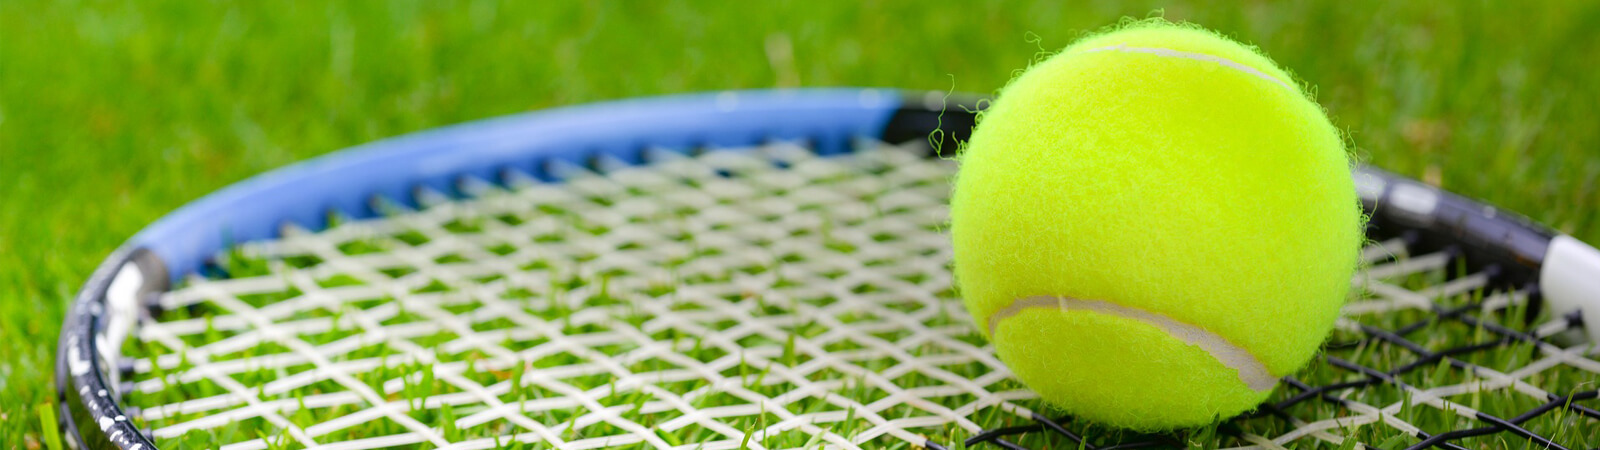 Wimbledon-tennis-featured